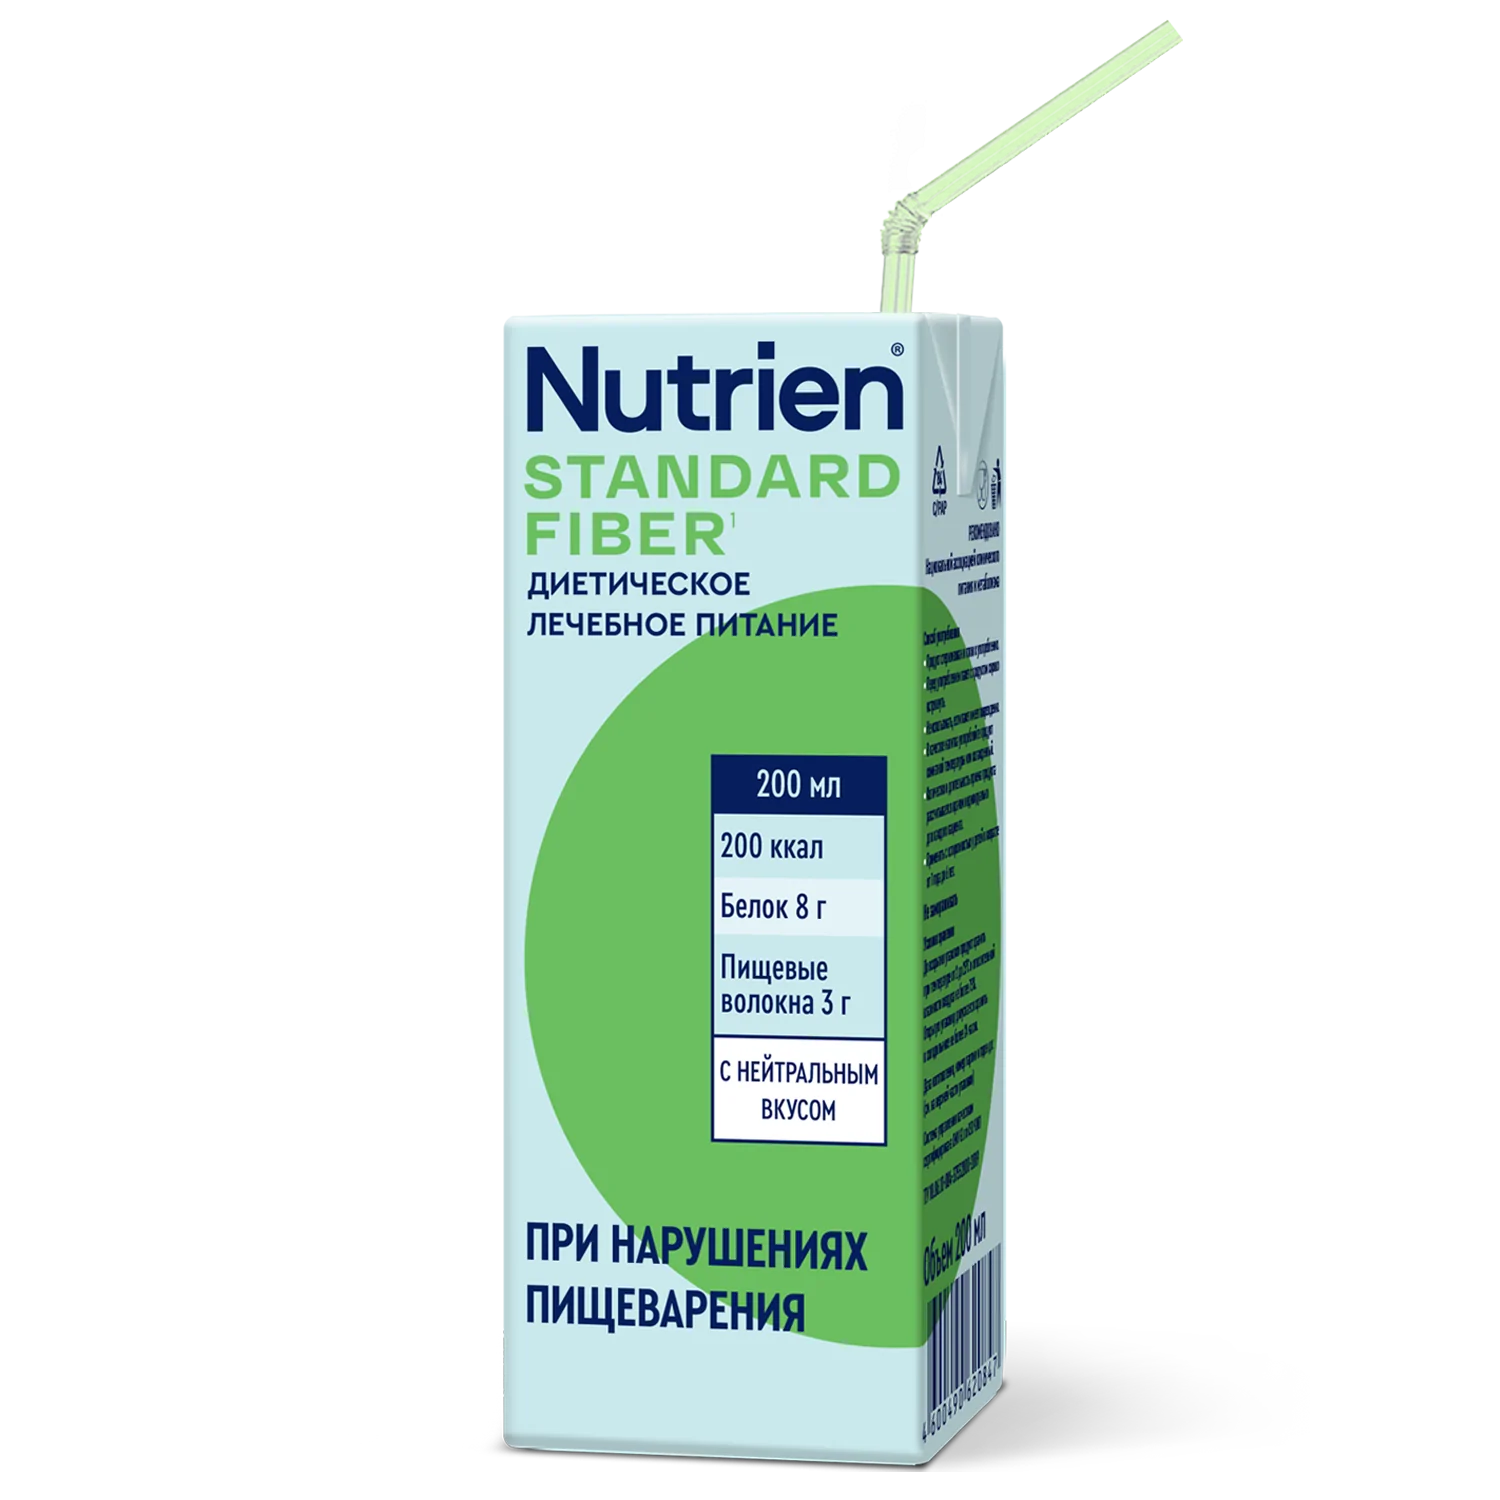 Nutrien Standard Fiber - 1